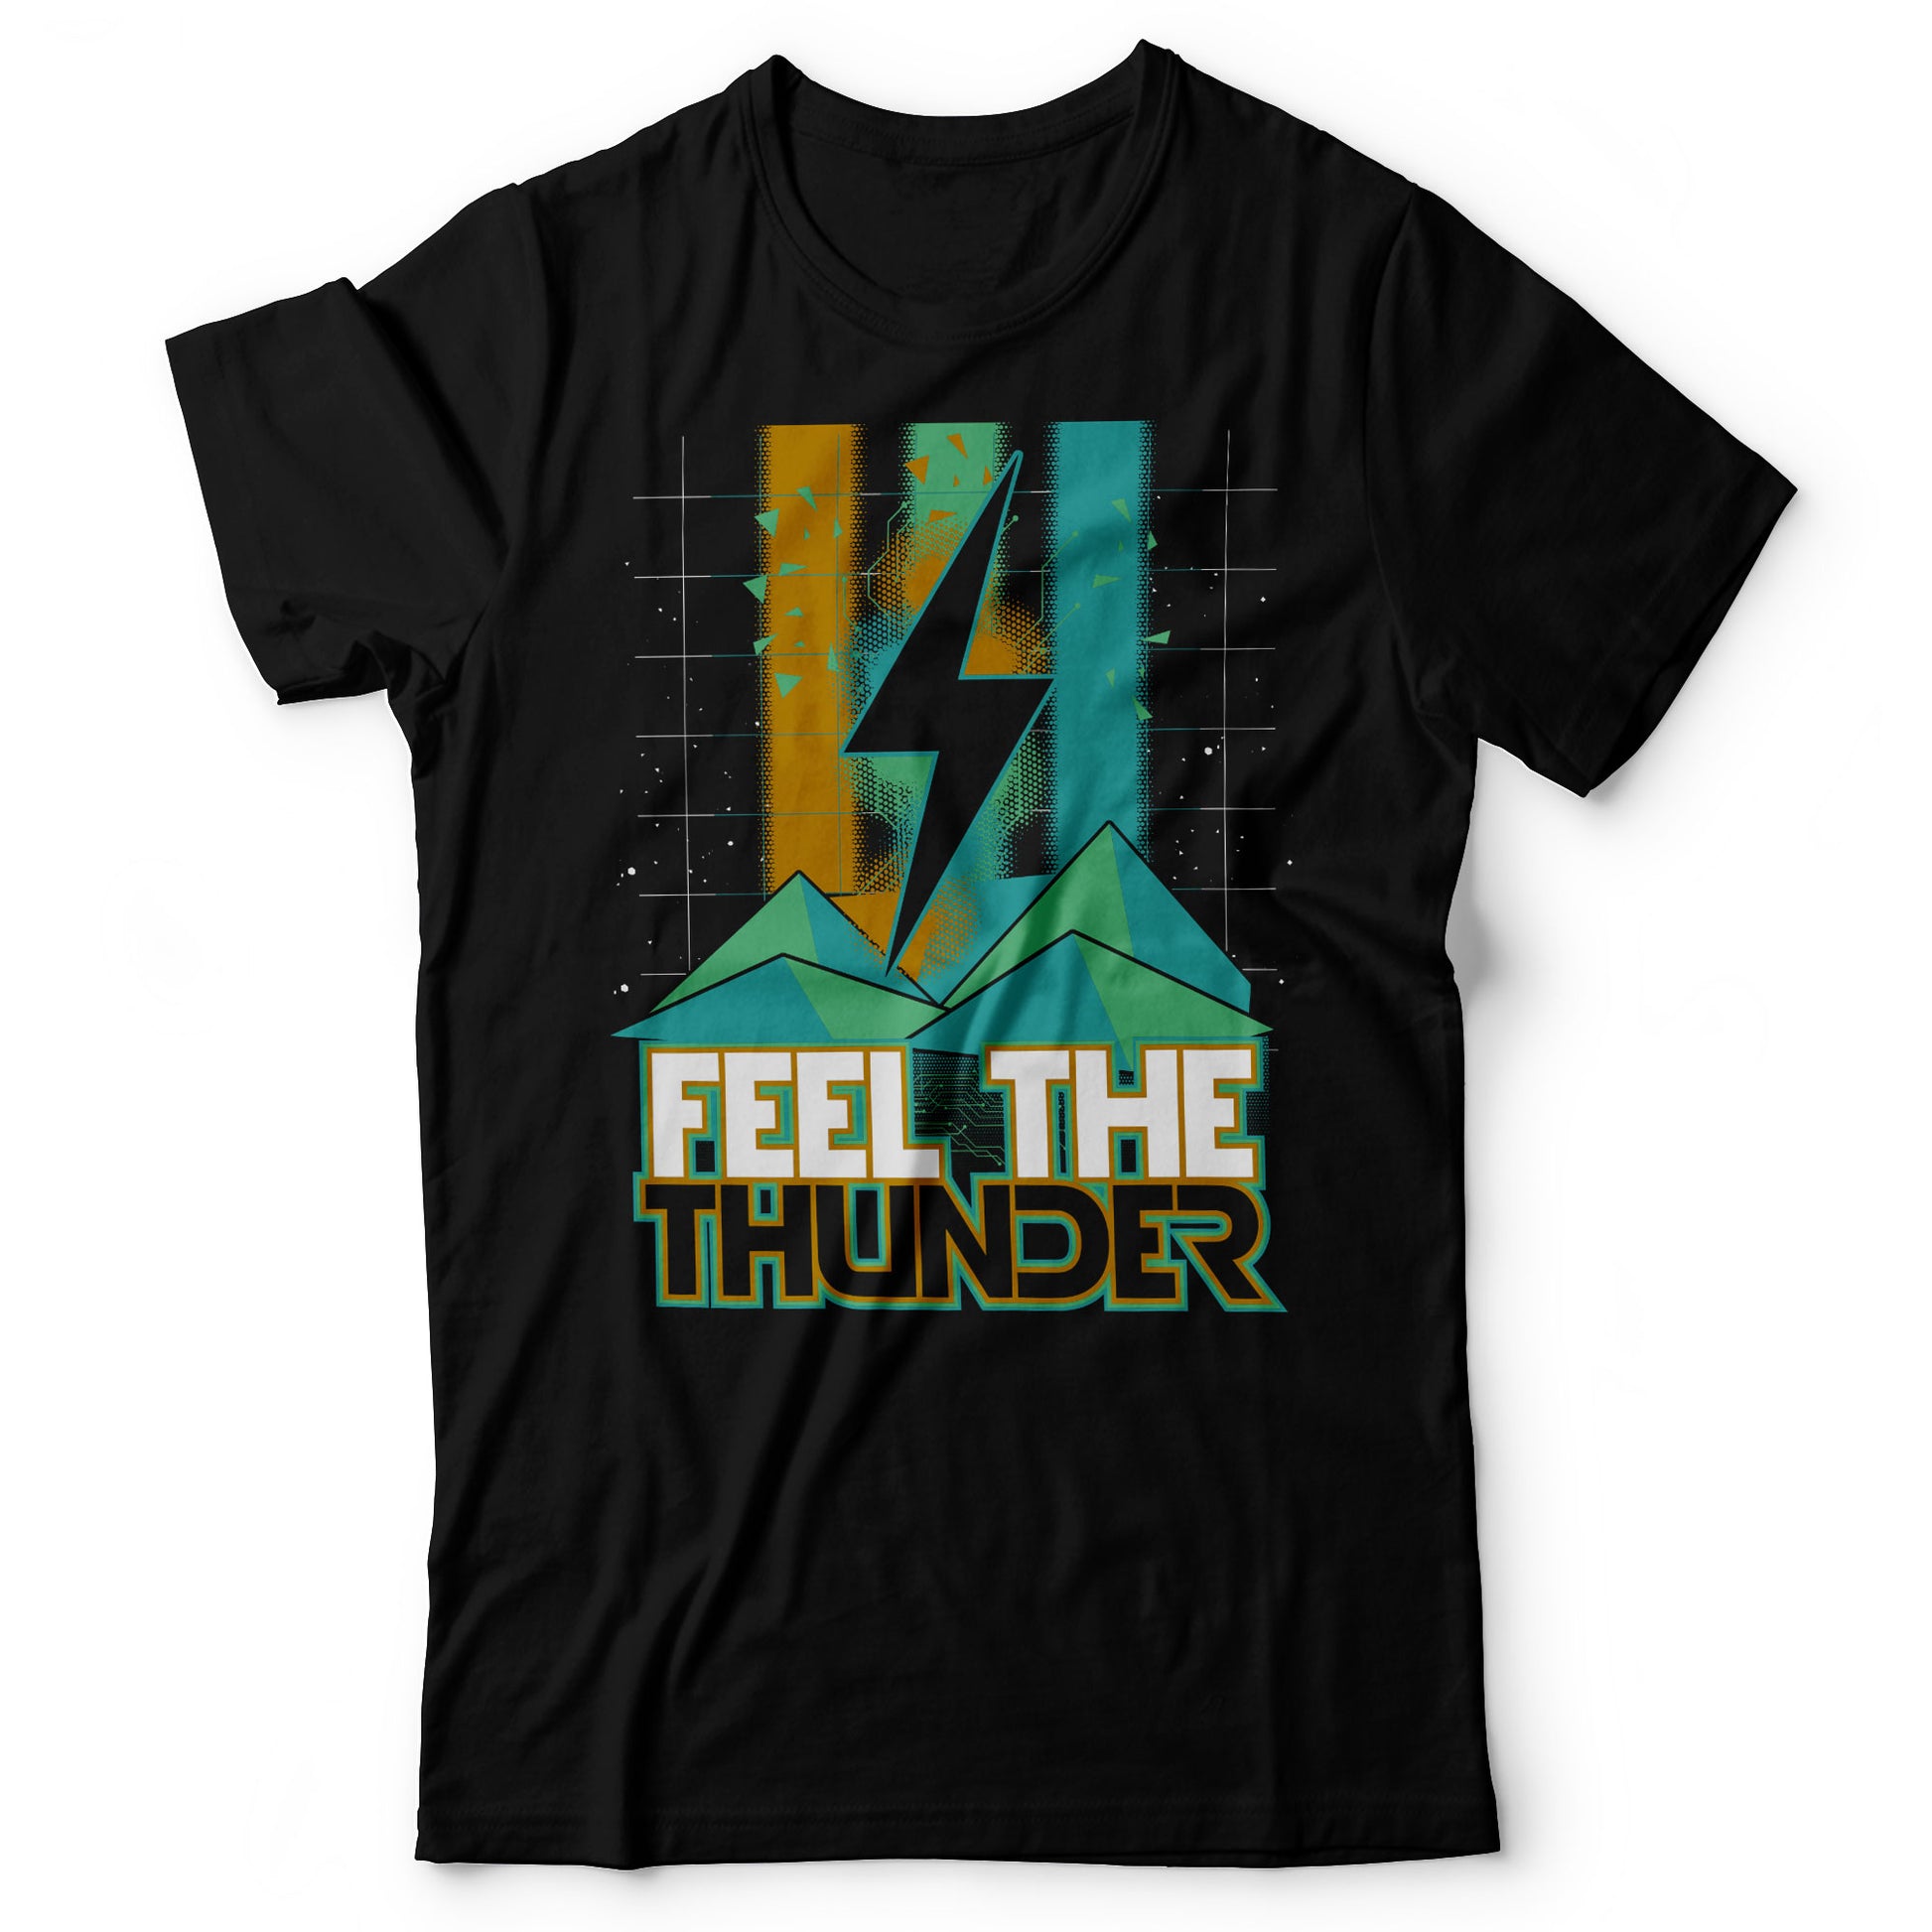 Imagine Dragons - Thunder - Men's T-shirt Black